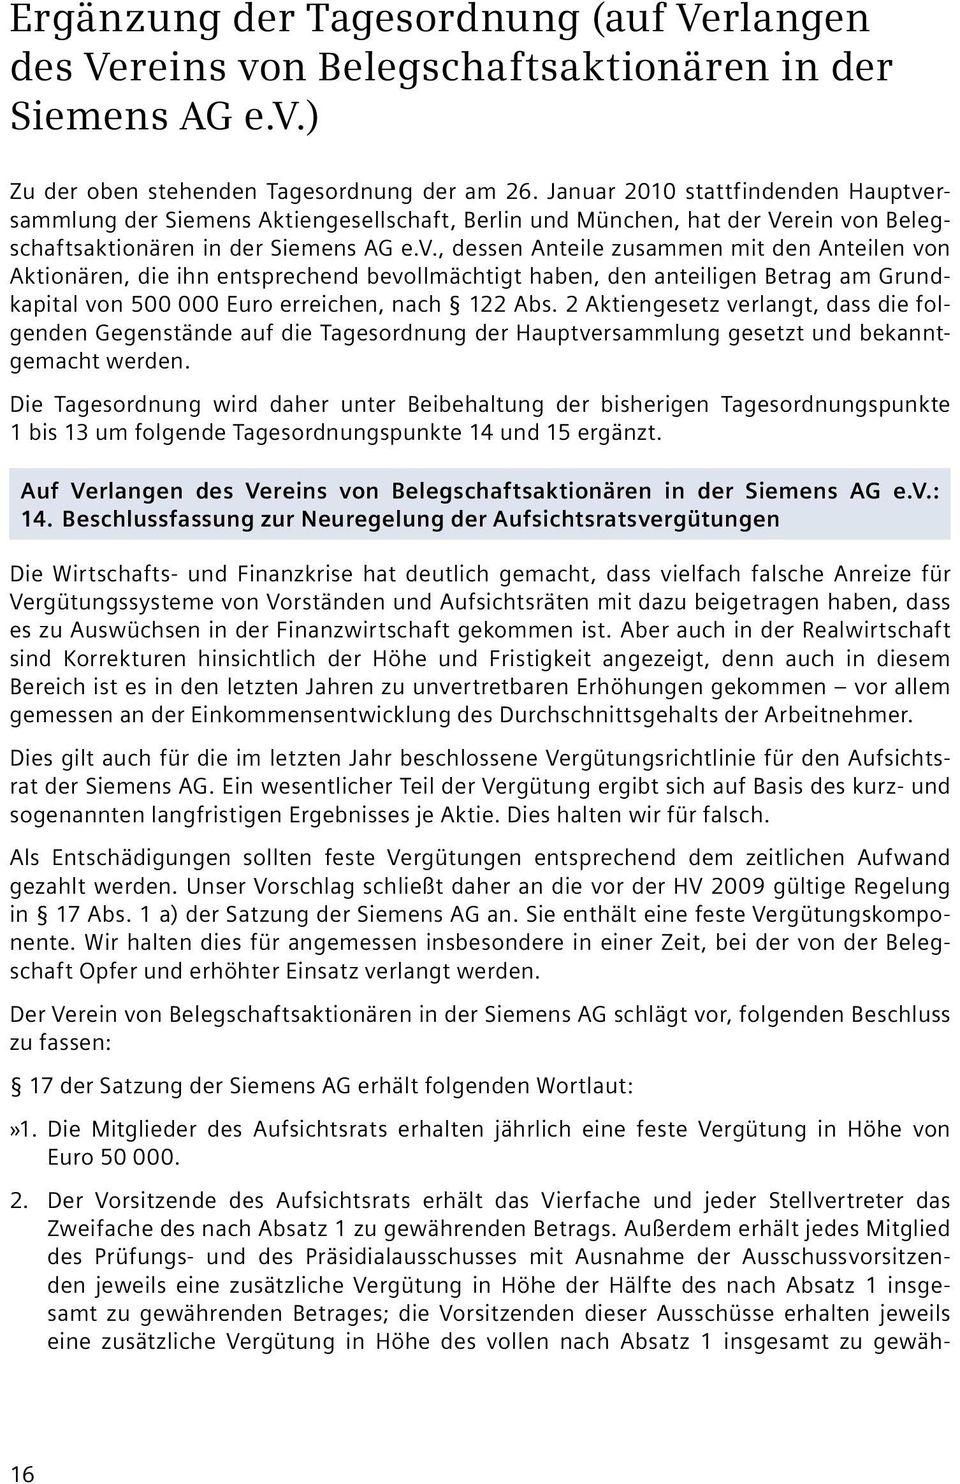 rsammlung der Siemens Aktiengesellschaft, Berlin und München, hat der Verein vo